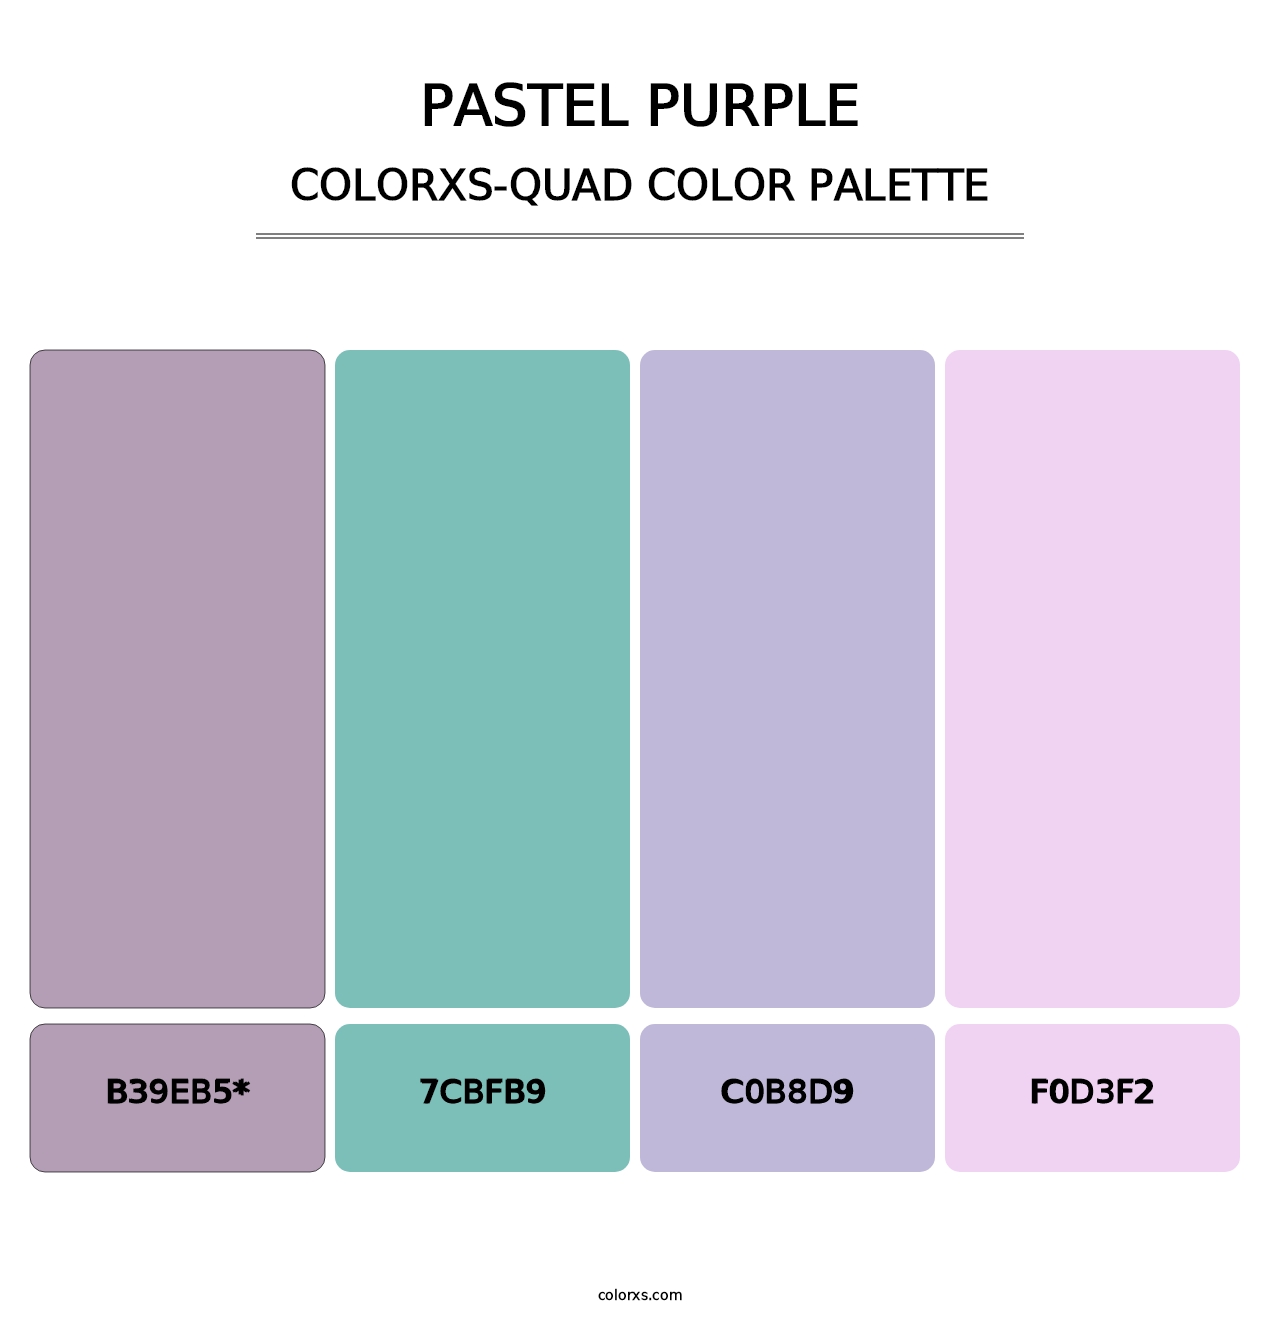 Pastel Purple - Colorxs Quad Palette